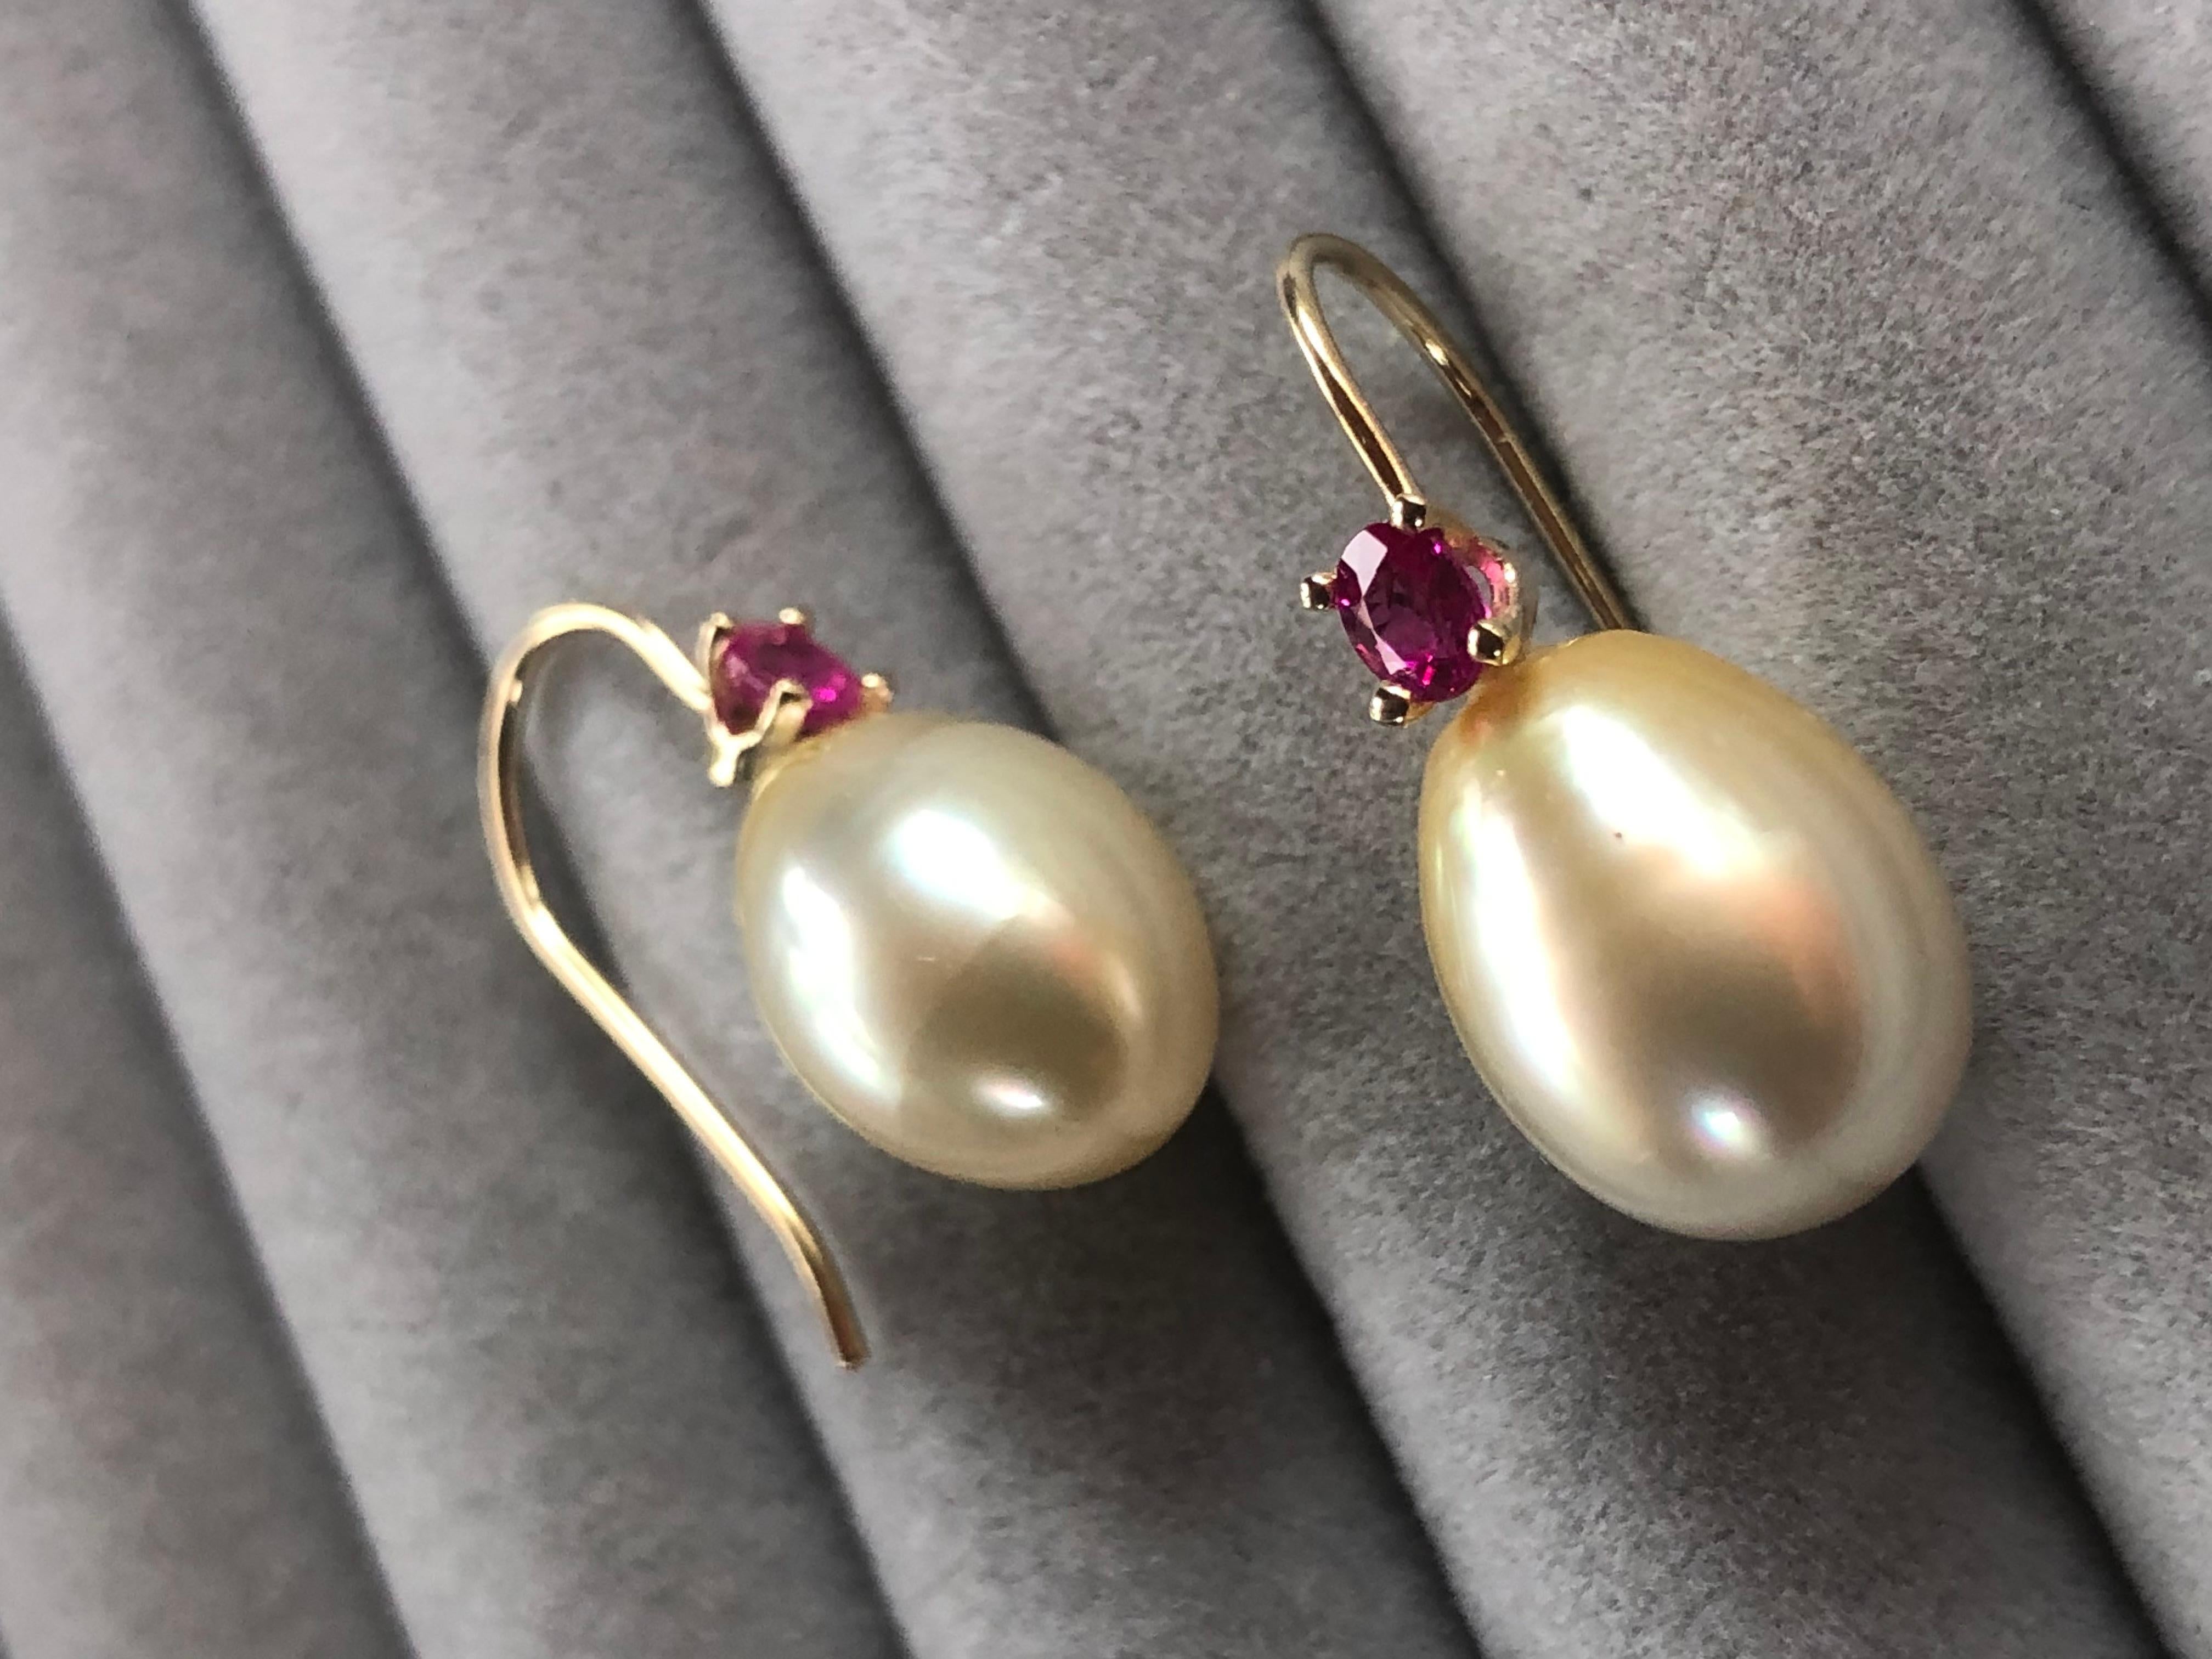 Ein Paar australischer Perlen ist in ein wunderschönes Design aus 14-karätigem Gelbgold eingefasst, das mit einem 0,70-karätigen natürlichen Rubin besetzt ist. Diese wunderschönen Ohrringe lassen die Trägerin bei jeder Gelegenheit strahlen.